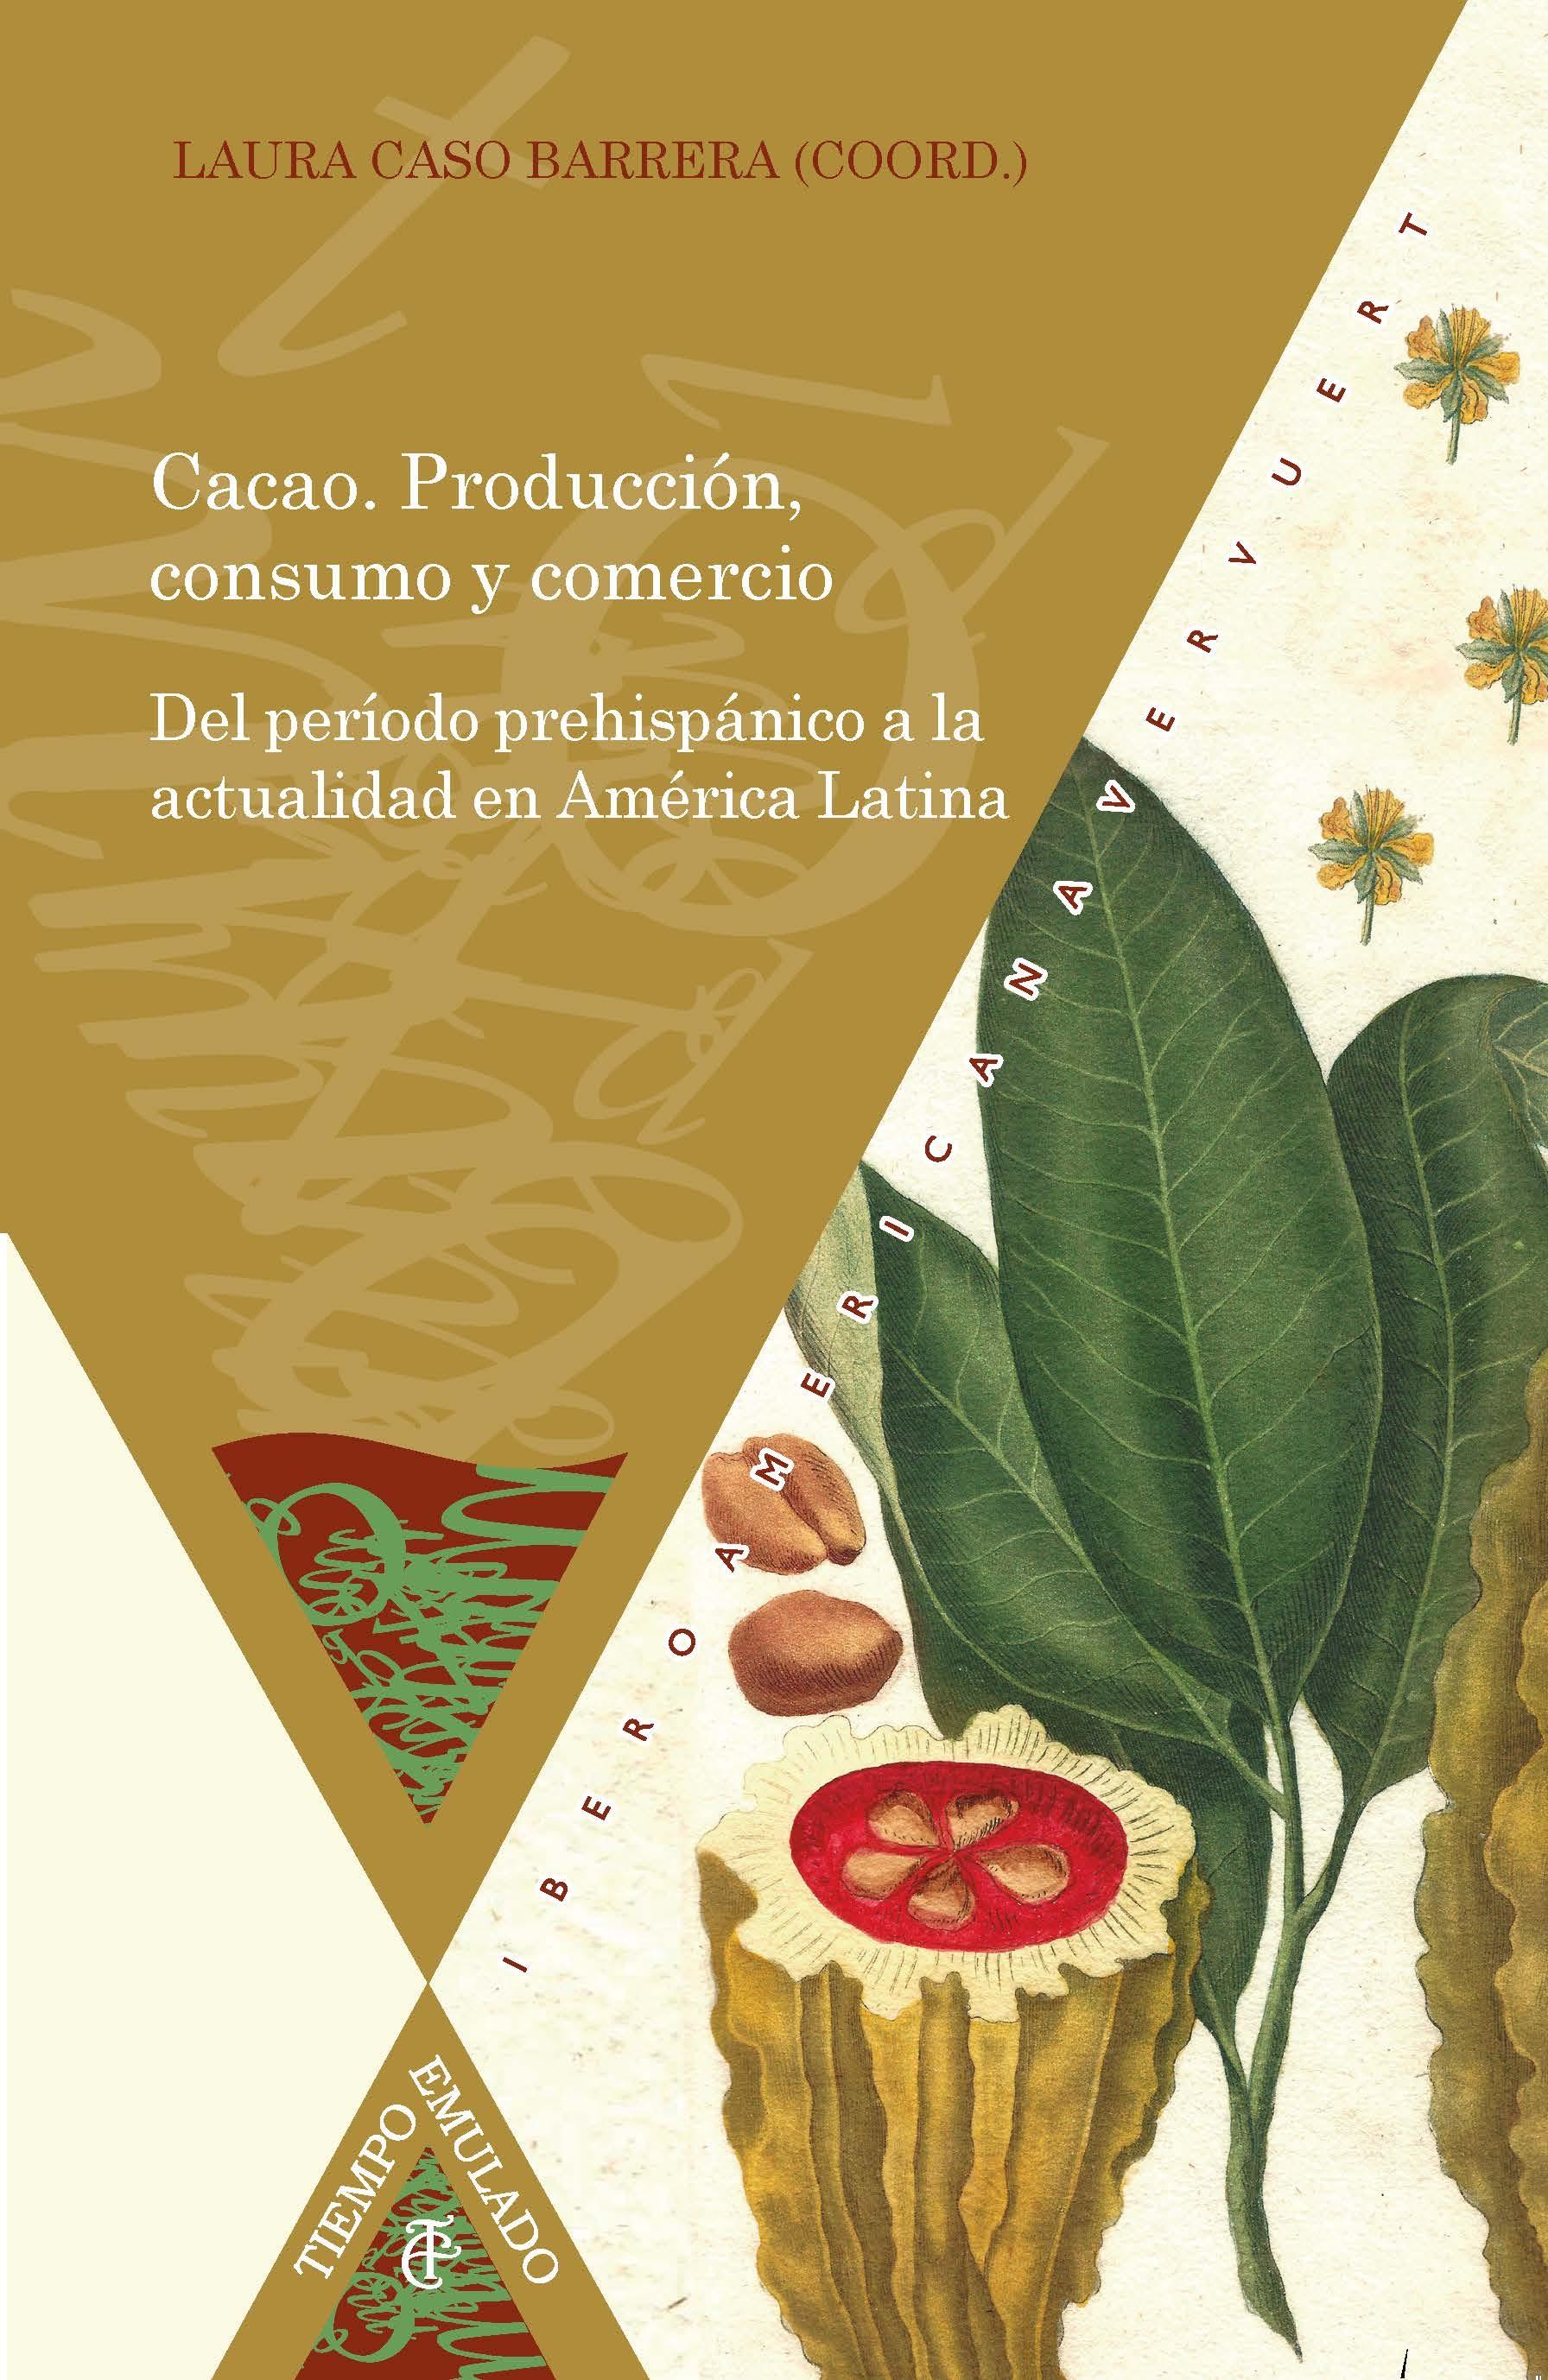 Cacao. Producción, consumo y comercio " Del período prehispánico a la actualidad en América Latina". 